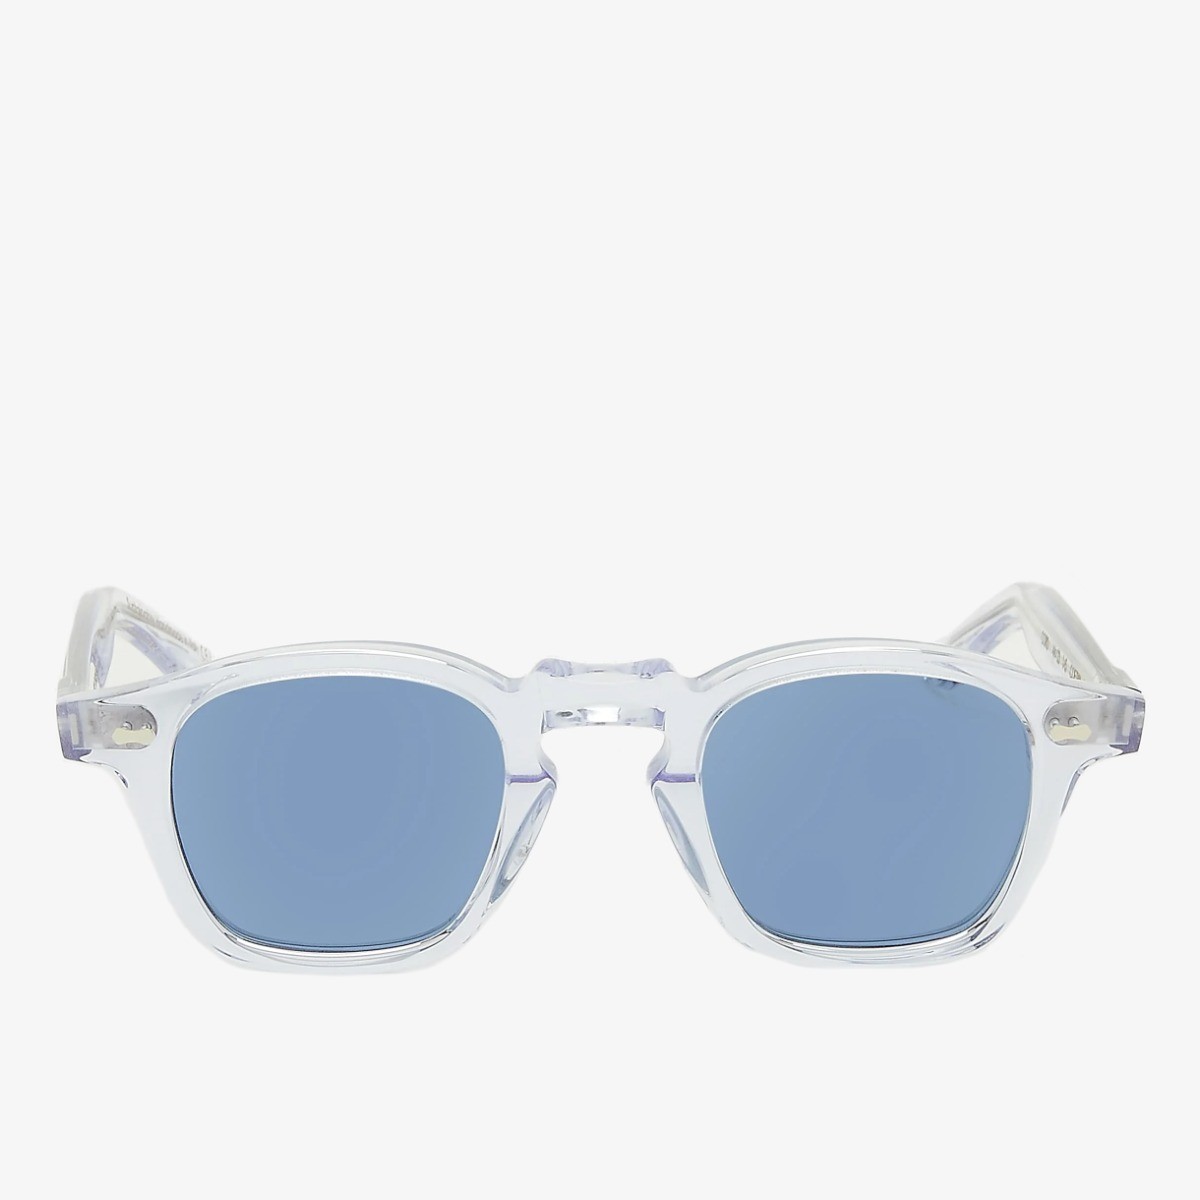 TBD Eyewear Cord saulės akiniai permatomais rėmeliais ir mėlynais lęšiais